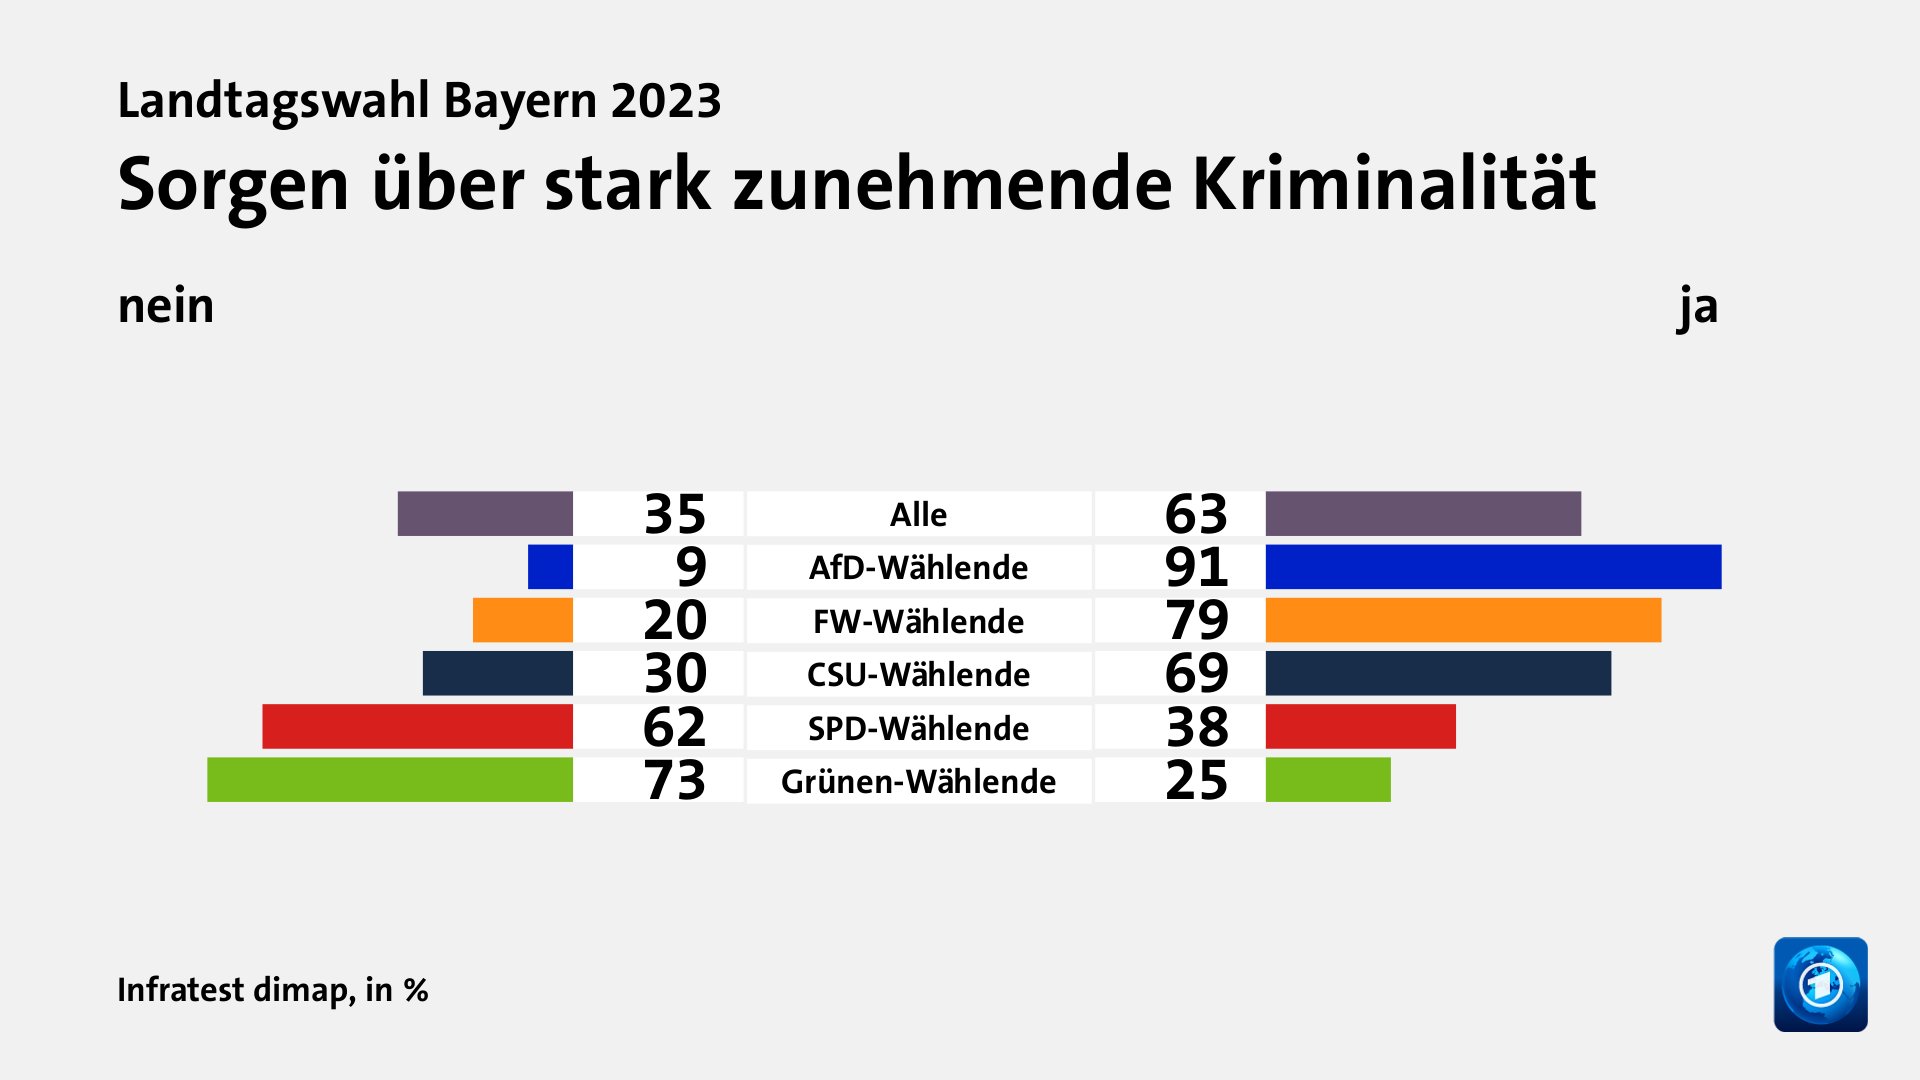 Sorgen über stark zunehmende Kriminalität (in %) Alle: nein 35, ja 63; AfD-Wählende: nein 9, ja 91; FW-Wählende: nein 20, ja 79; CSU-Wählende: nein 30, ja 69; SPD-Wählende: nein 62, ja 38; Grünen-Wählende: nein 73, ja 25; Quelle: Infratest dimap